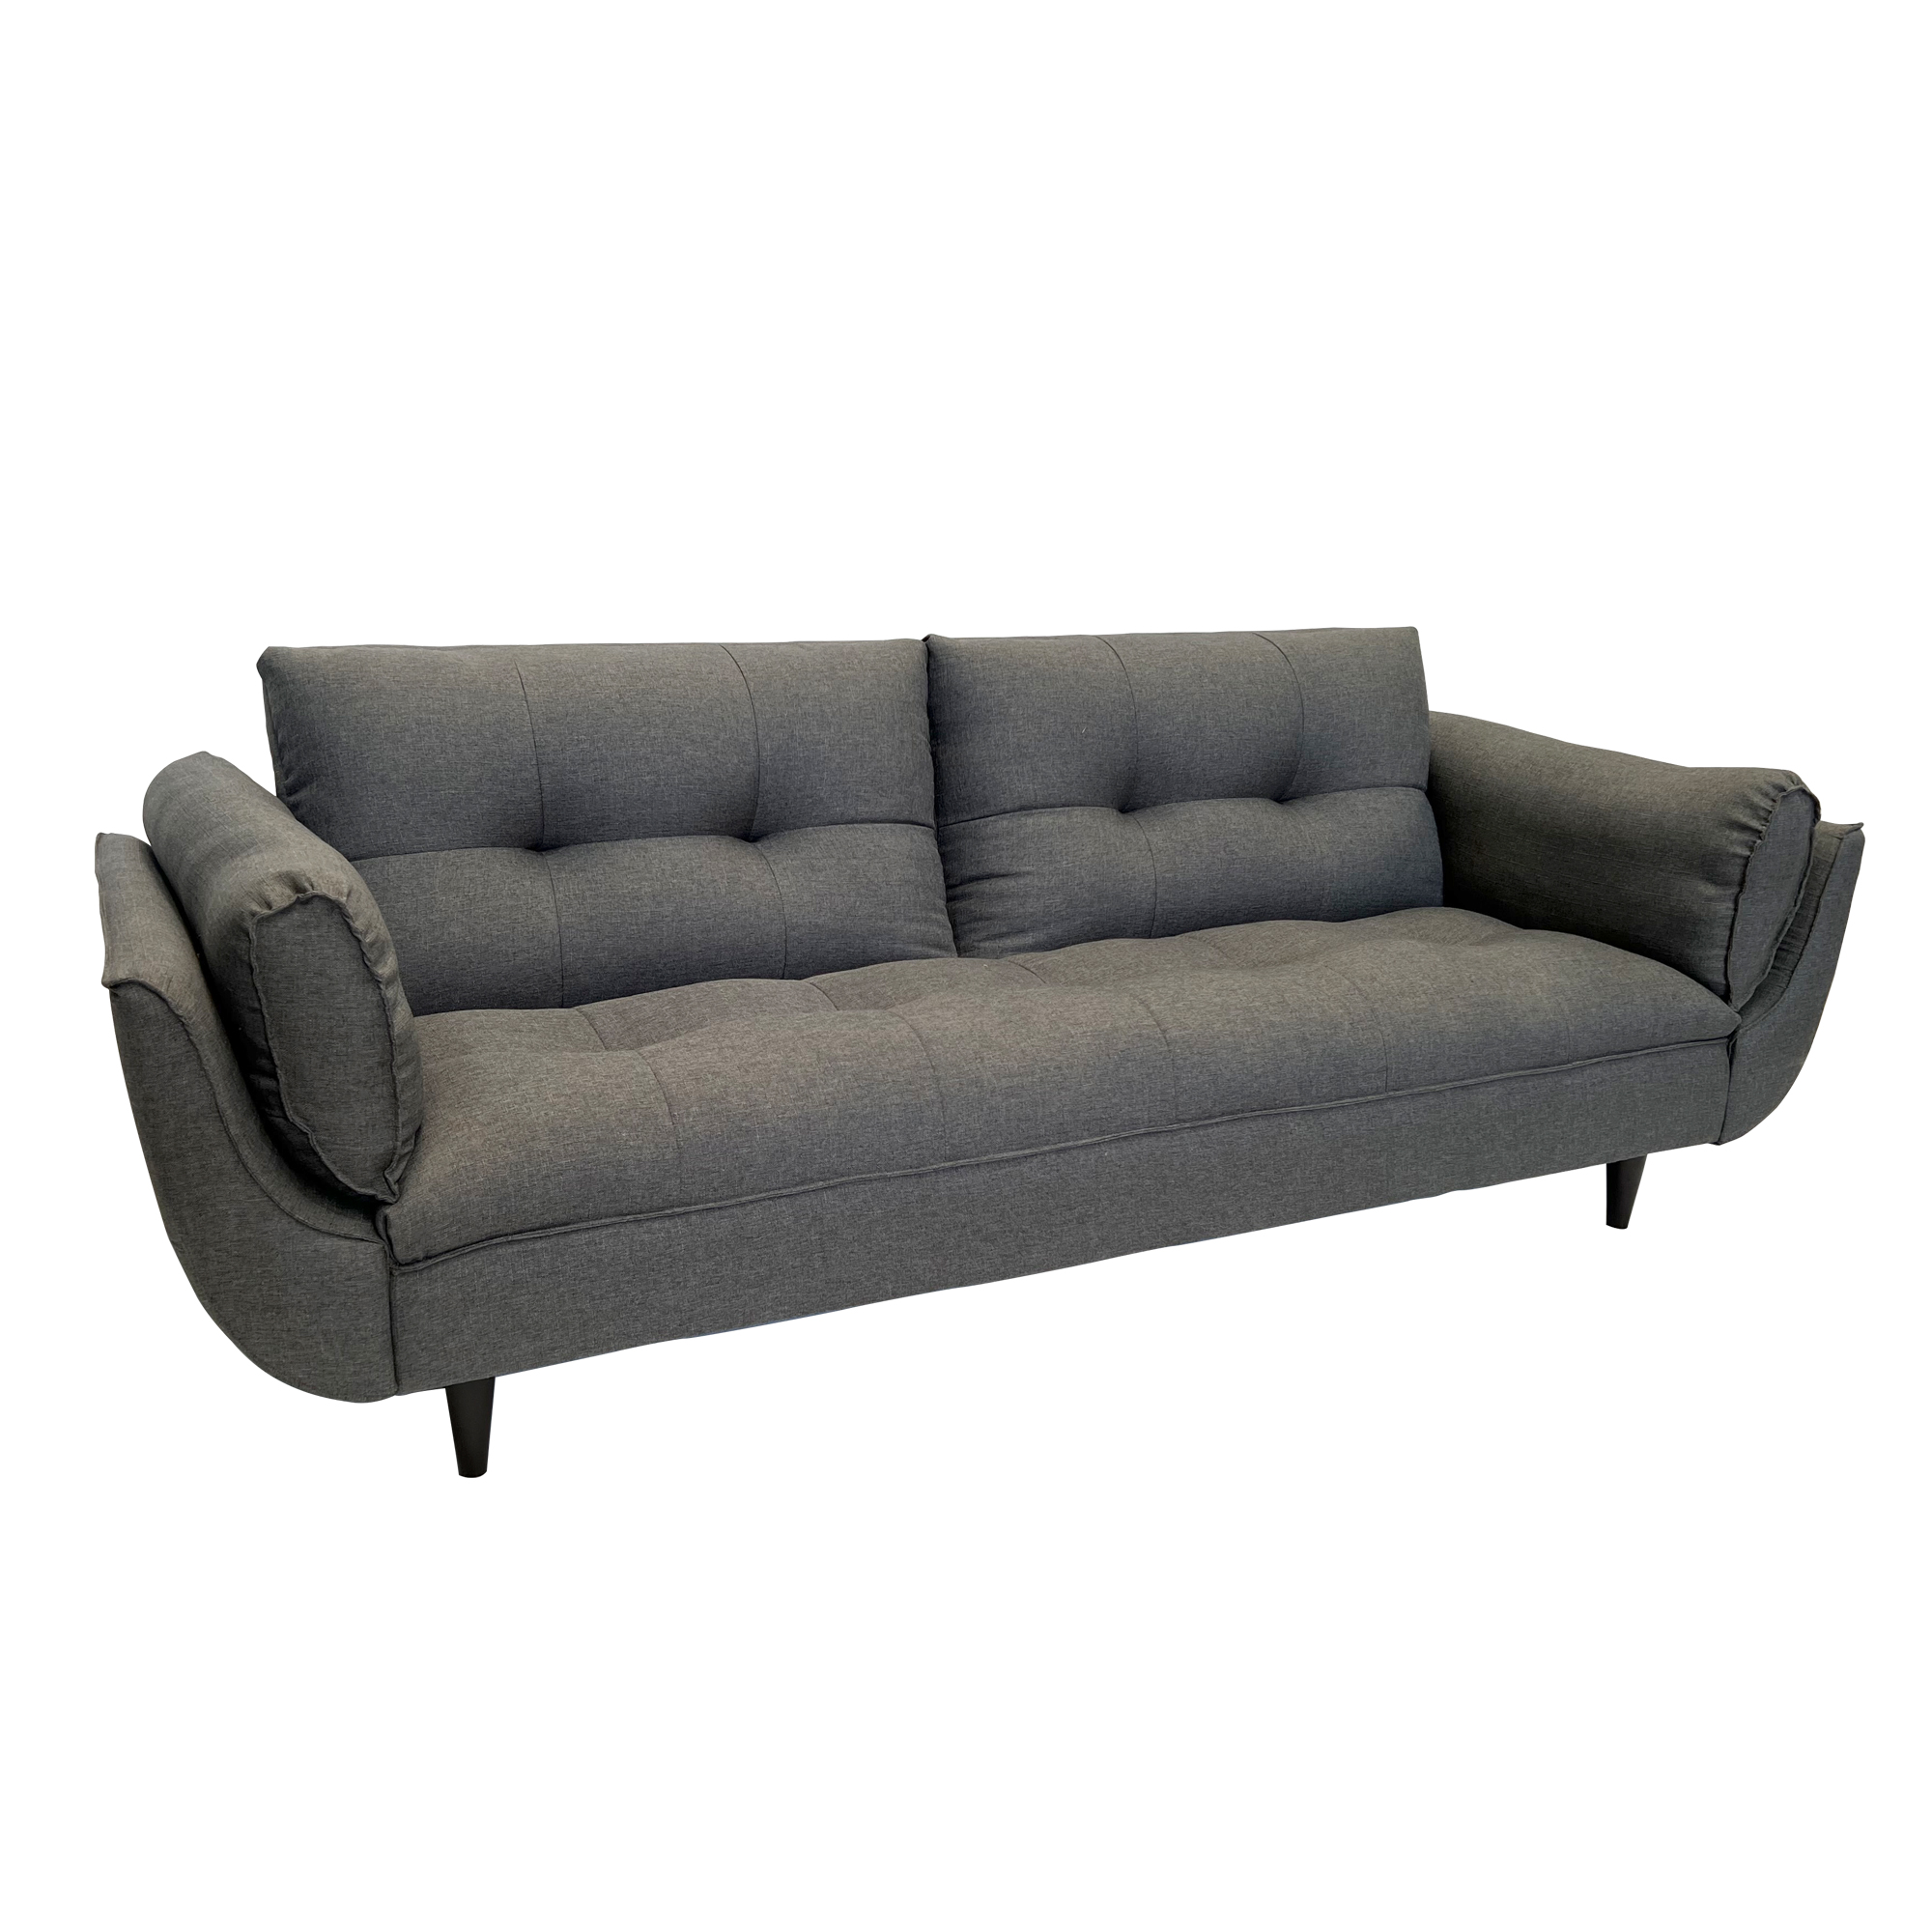 Sofa Cama - Todo Mobydec en un Click sofa cama moderno